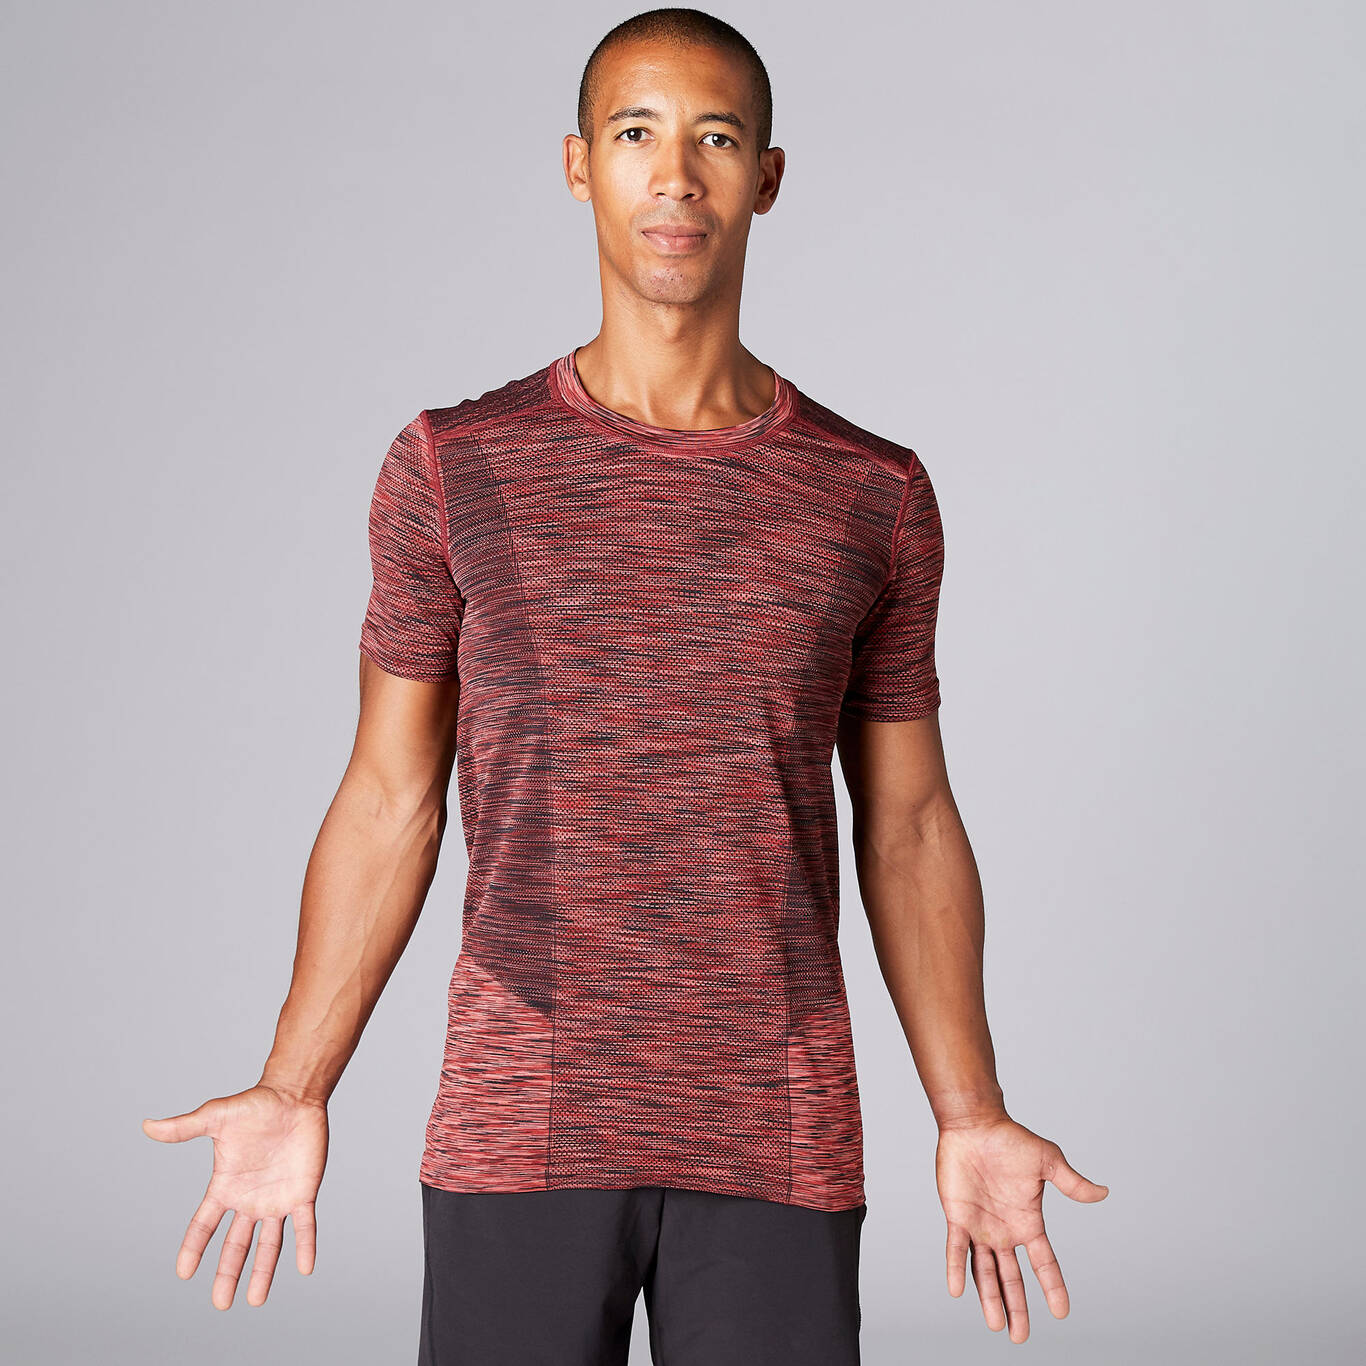 Seamless Short-Sleeved Yoga T-Shirt - Mottled Burgundy